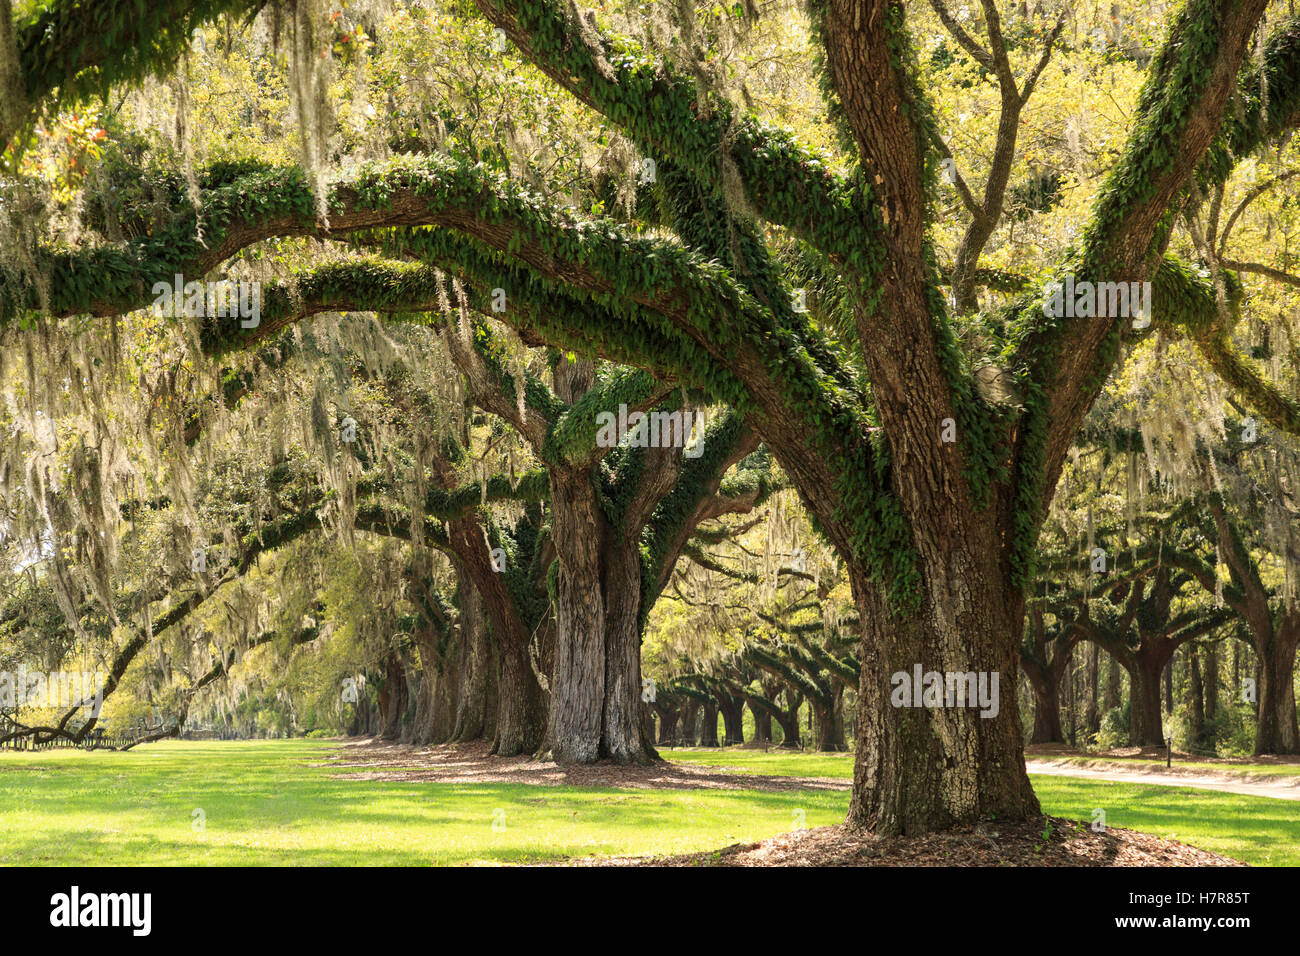 Live Oaks planté en 1743, Boone Hall Plantation et jardins près de Charleston, Mt Pleasant, Caroline du Sud, USA Banque D'Images